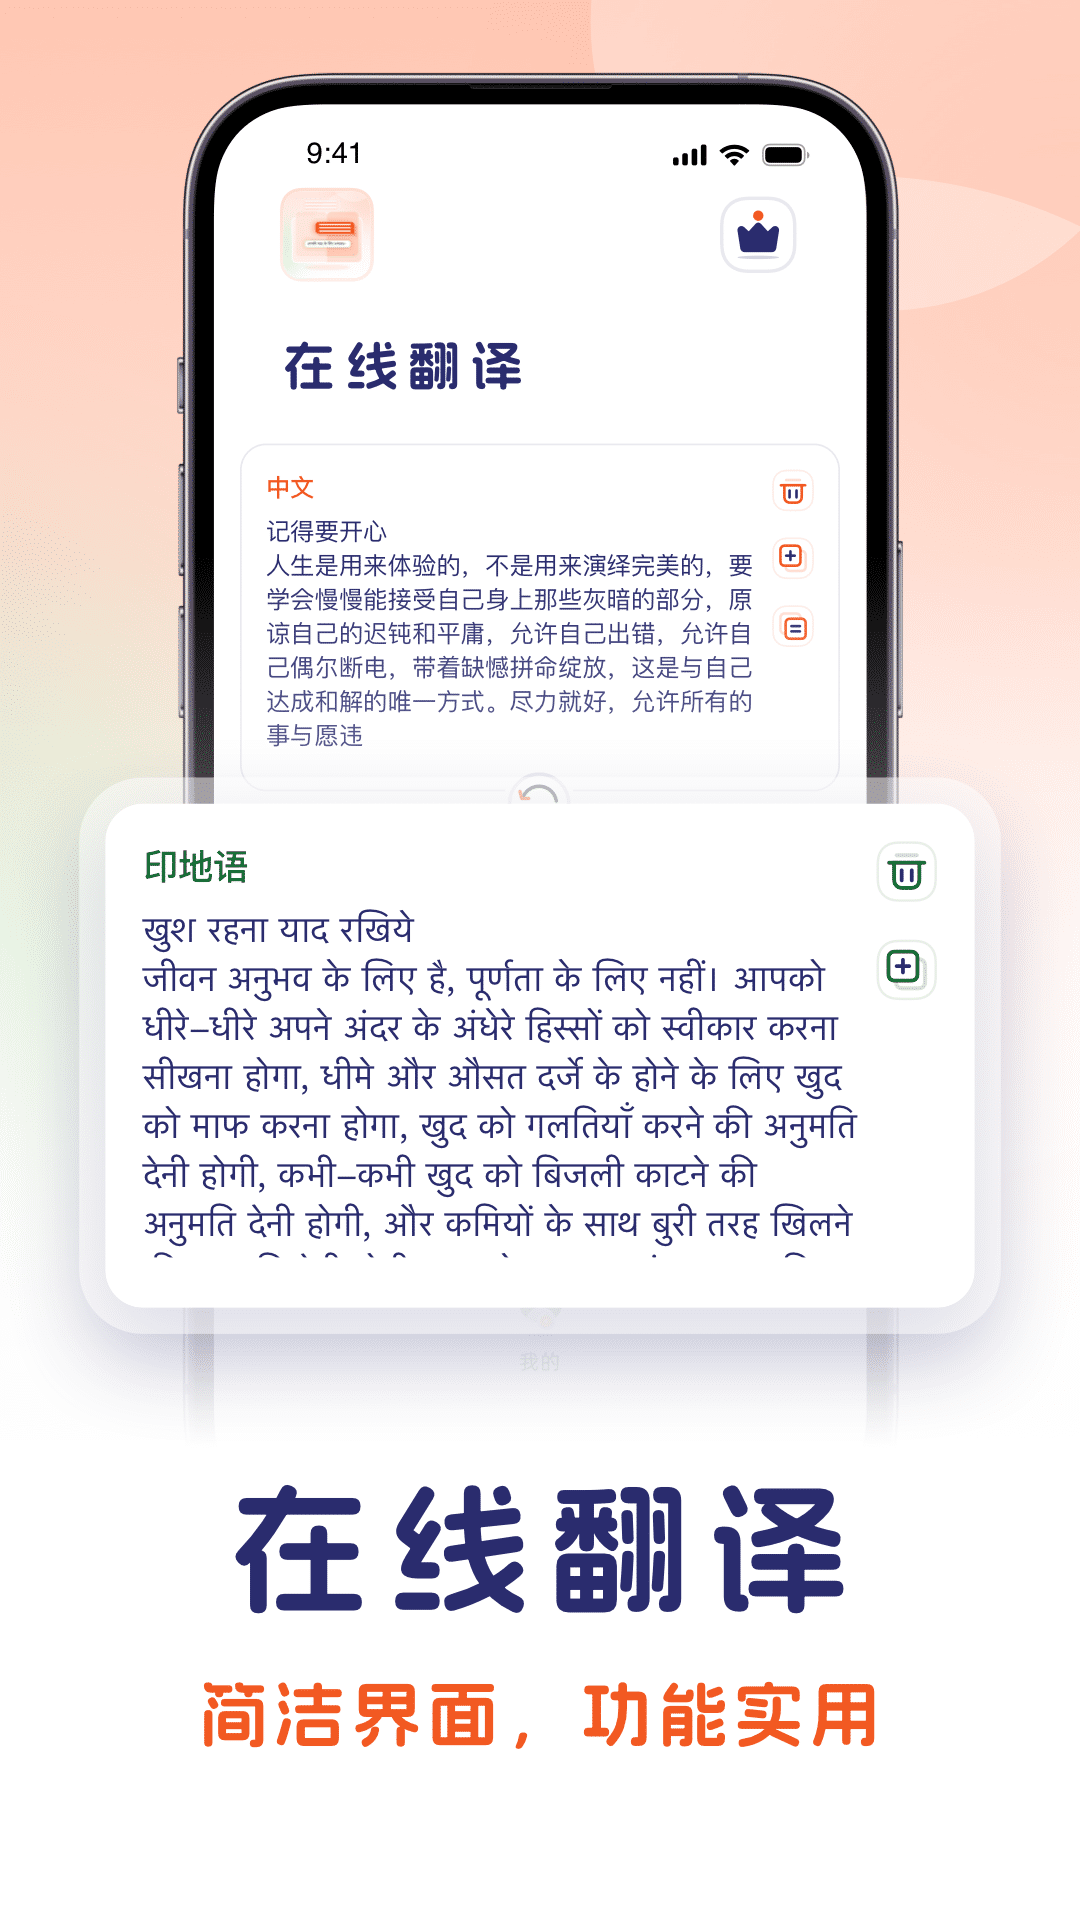 印地语翻译中文转化器